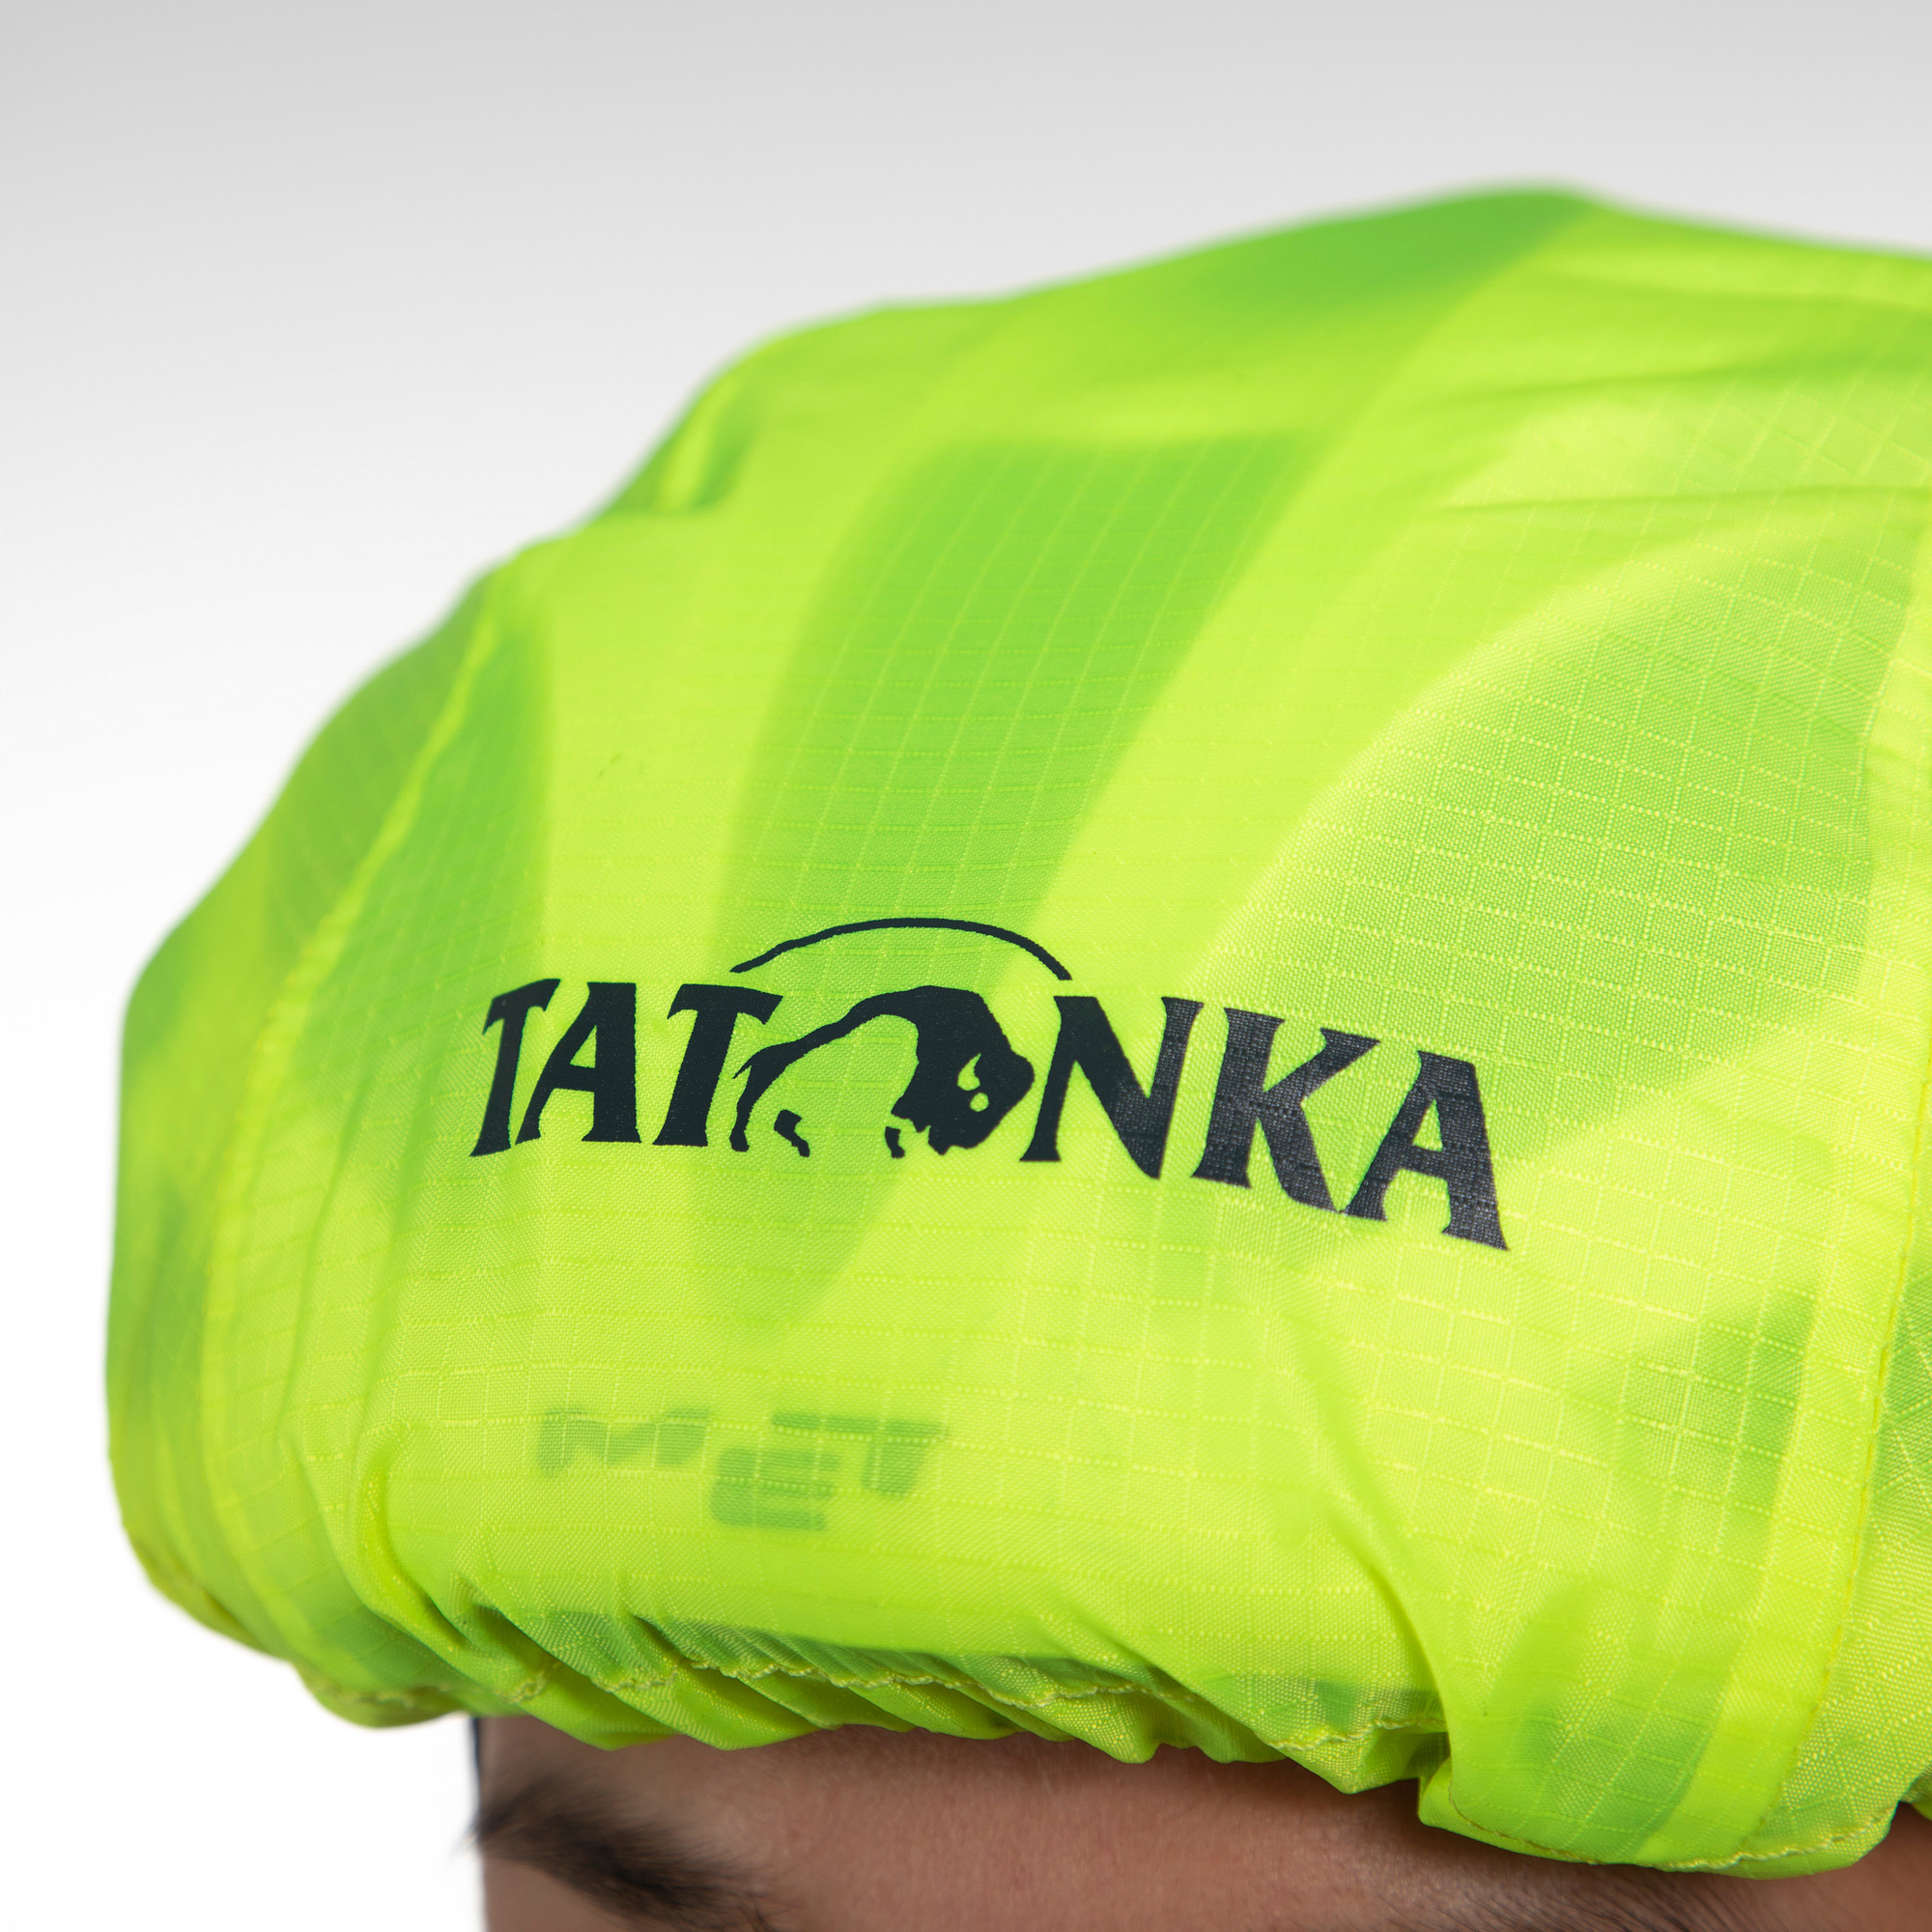 Tatonka Helmet Cover safety yellow gelb Fahrrad-Zubehör 4013236370577